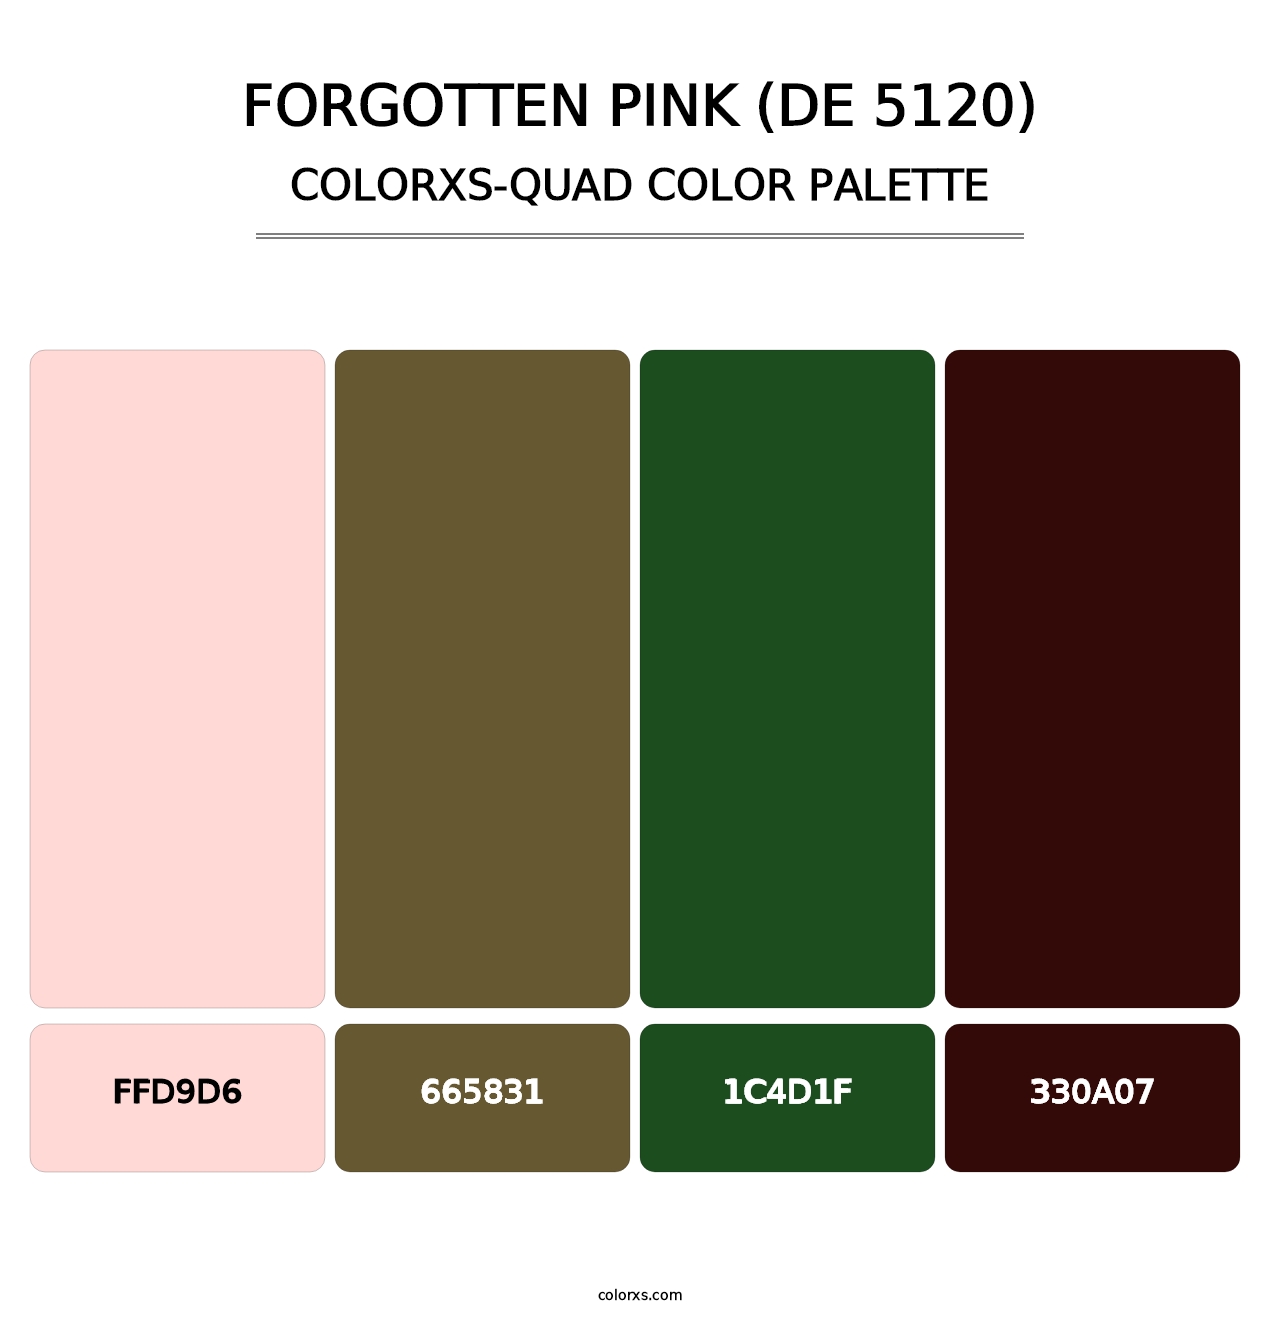 Forgotten Pink (DE 5120) - Colorxs Quad Palette